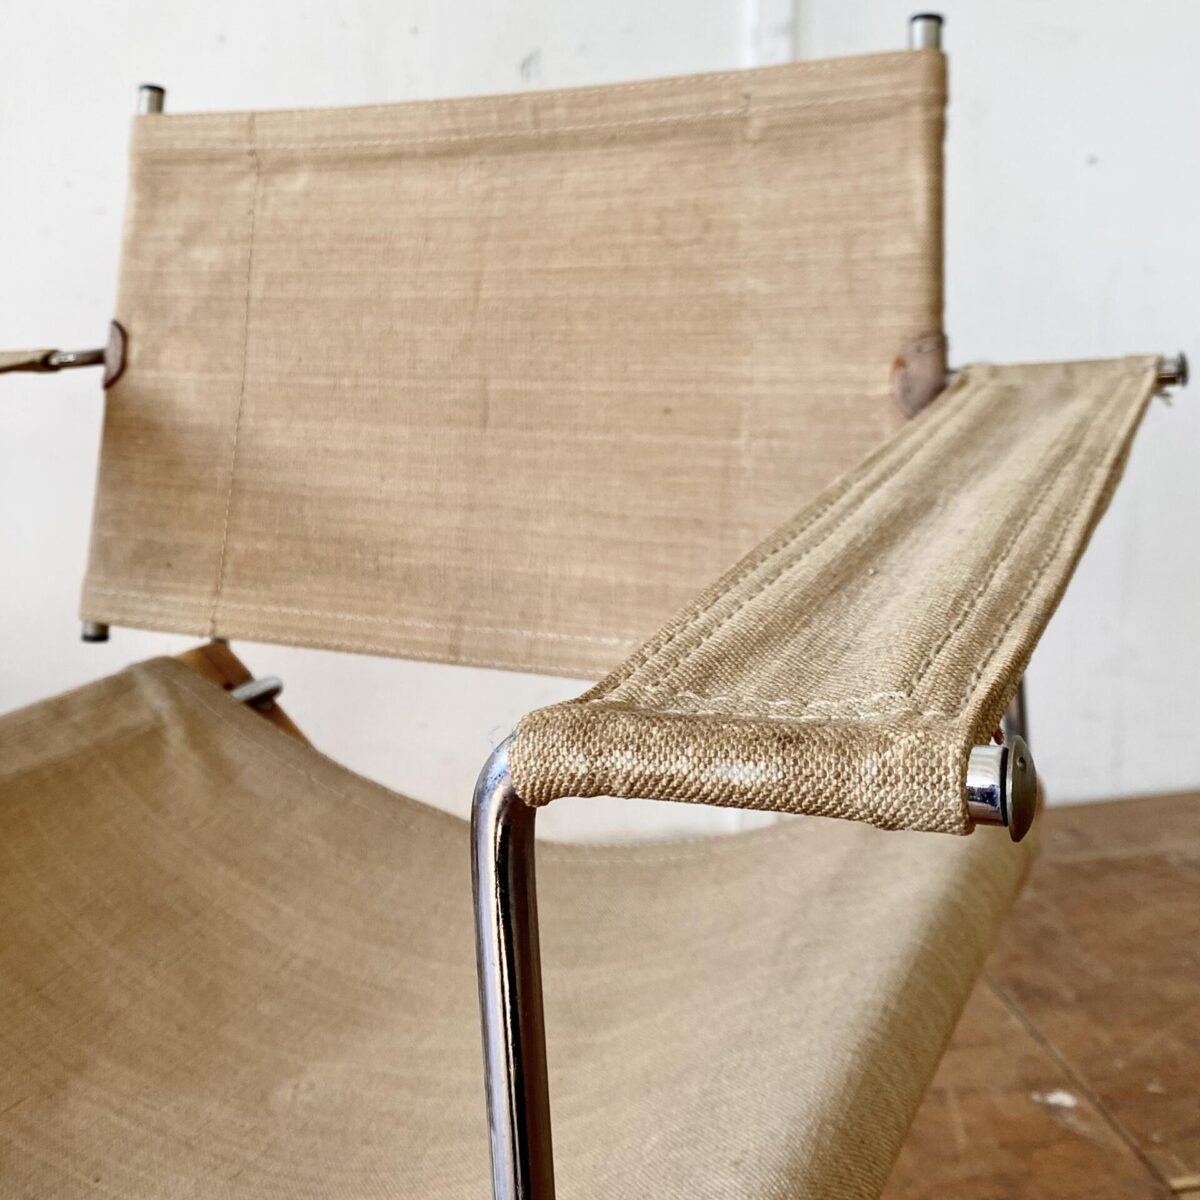 Deuxieme.shop italian design Safari Chair. Zwei klappbare Regiestühle aus Buchenholz. 55x55cm Sitzhöhe ca. 40cm. Das Holzgestell ist mit Zinken Verbindungen verarbeitet. Die Metall Elemente sind verchromt. Der Leinen Stoff mit ein paar kleinen Schürfungen, ist in sauberem Zustand mit etwas Alterspatina. Insgesamt hochwertig verarbeitet, ein Hersteller ist uns nicht bekannt. Die Stühle sind eine Mischung aus Regiestuhl und Safari Sessel. 